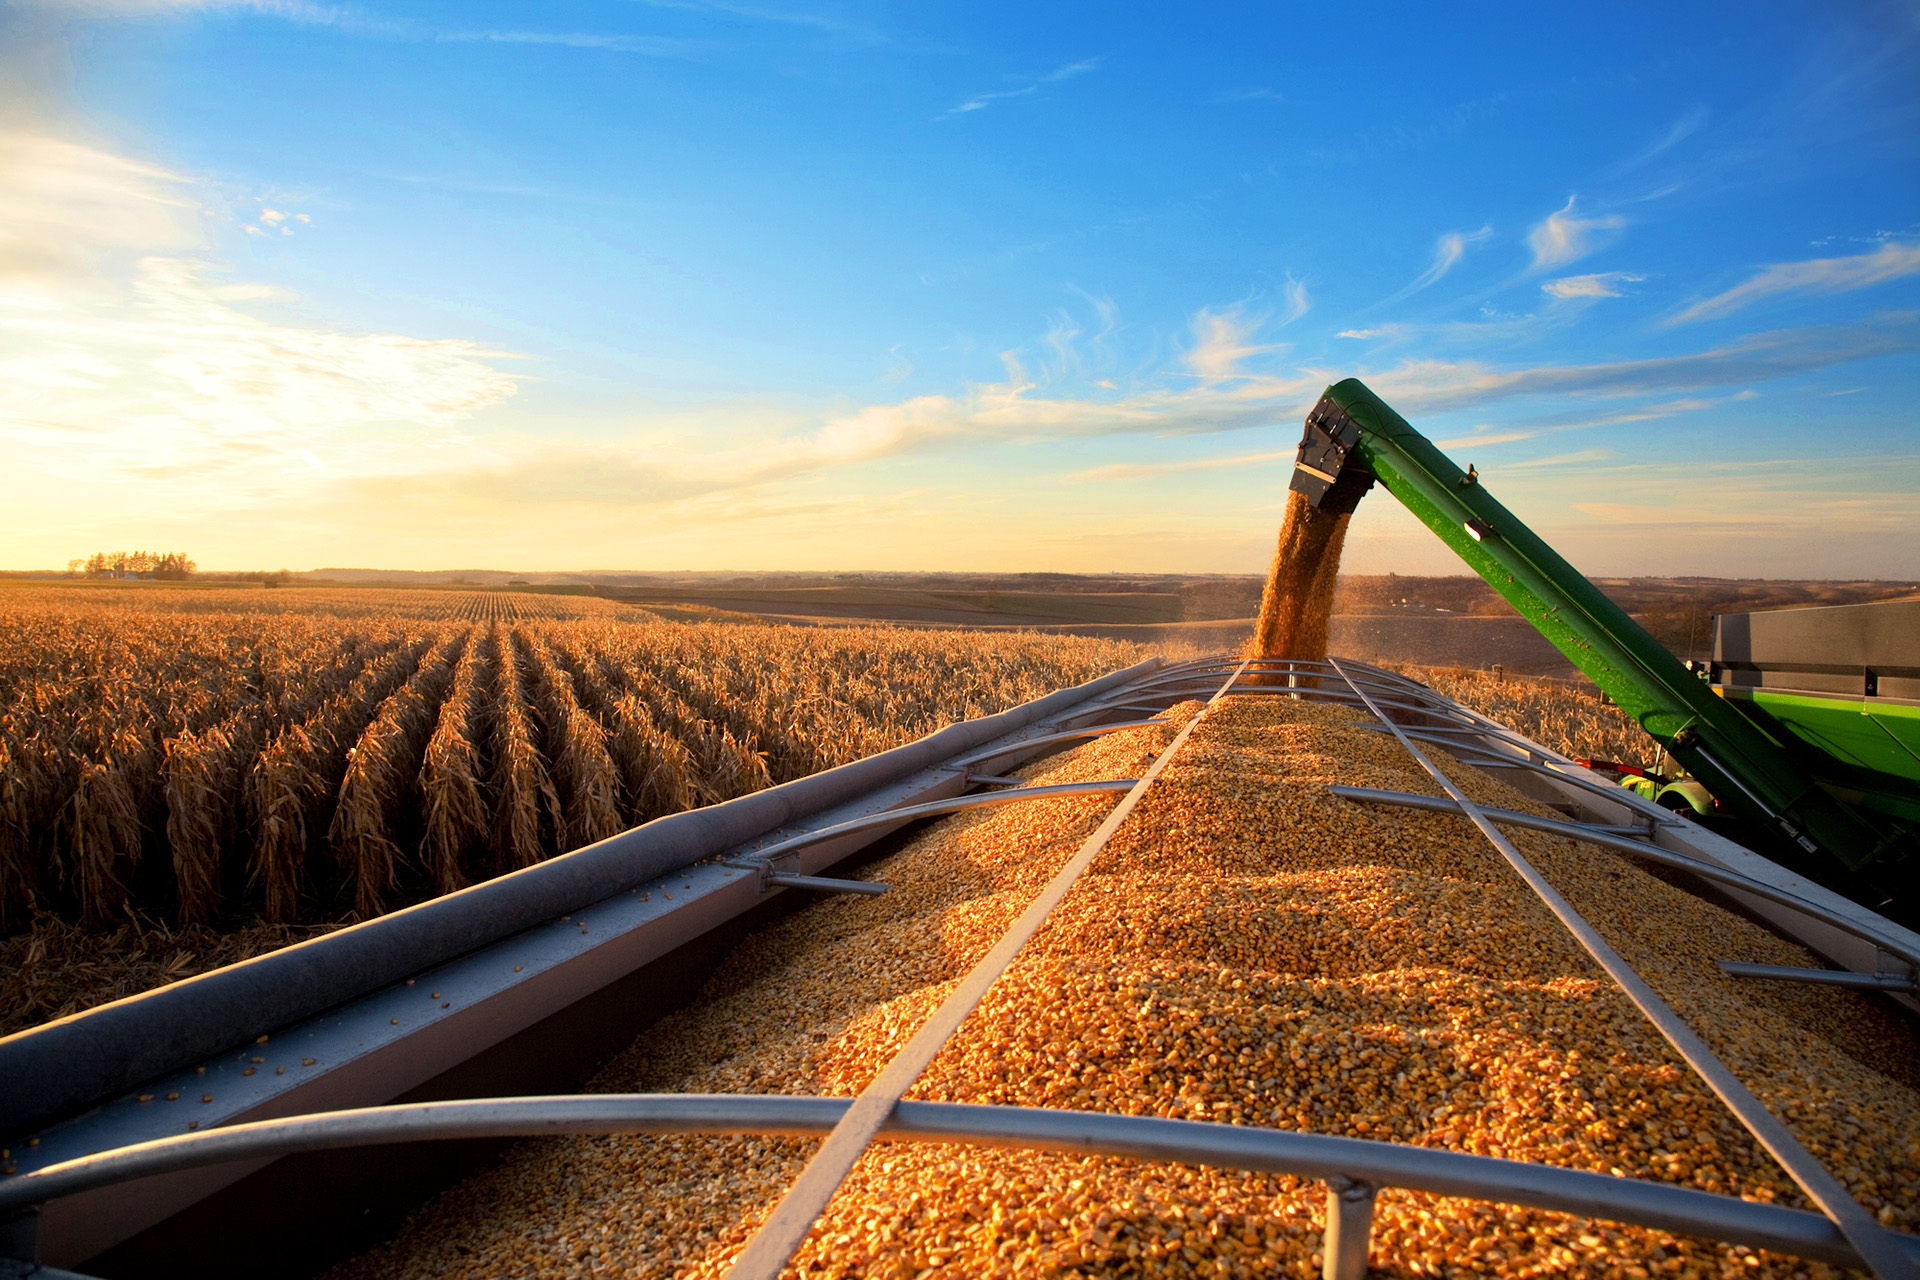 Campagne agricole 2022/23 : La production des céréales estimée à 55,1 millions de quintaux